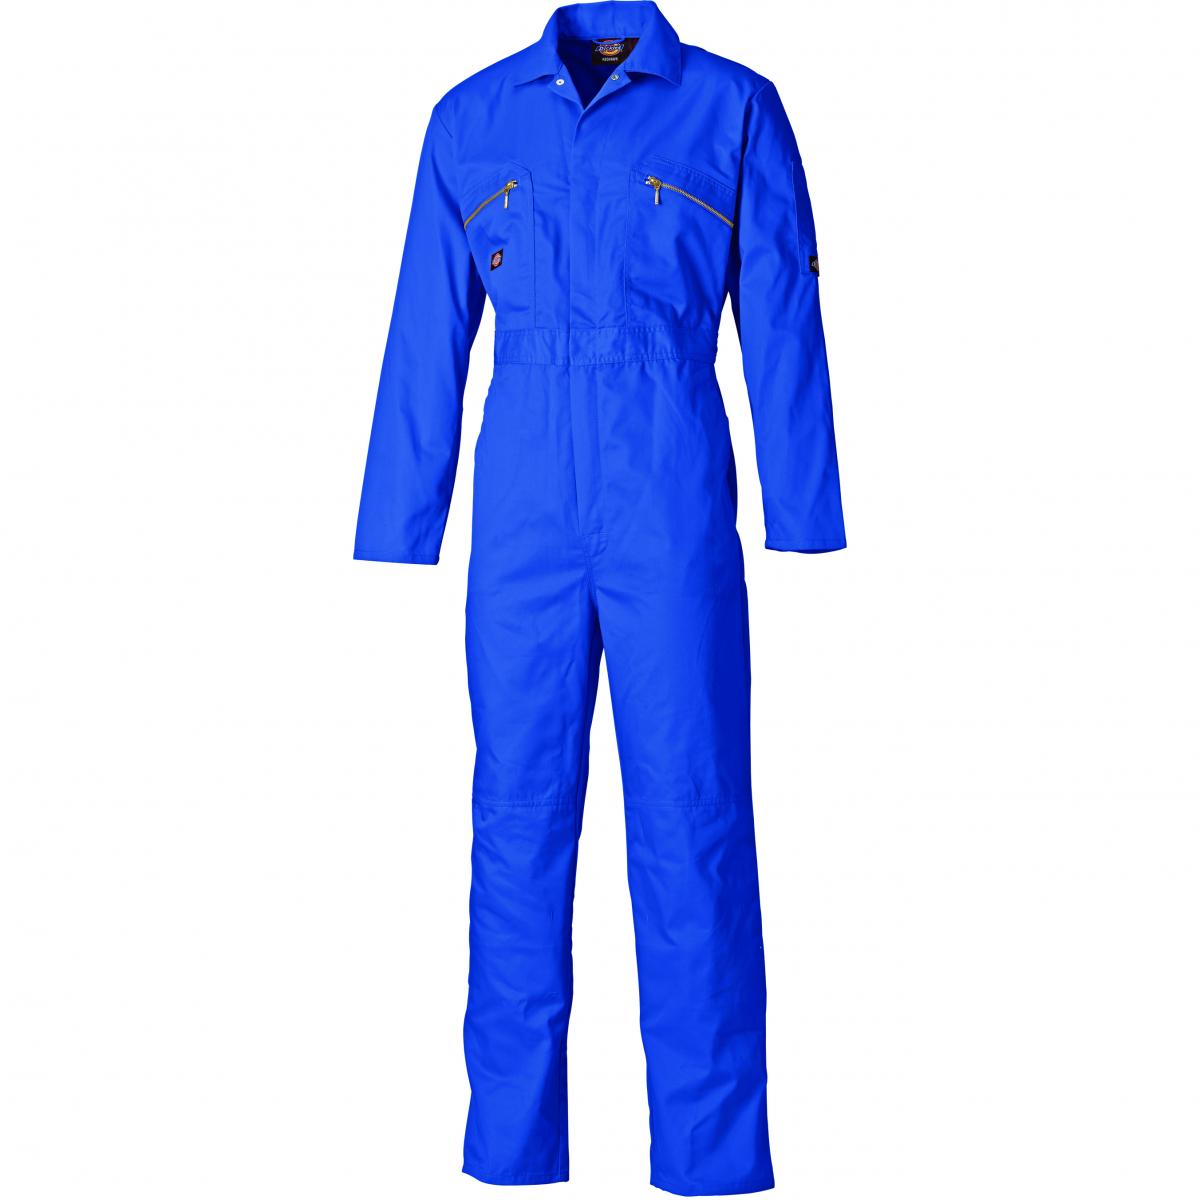 Hersteller: Dickies Herstellernummer: WD4839J Artikelbezeichnung: Redhawk Junior-Overall für Kinder und Jugendliche Farbe: Königsblau